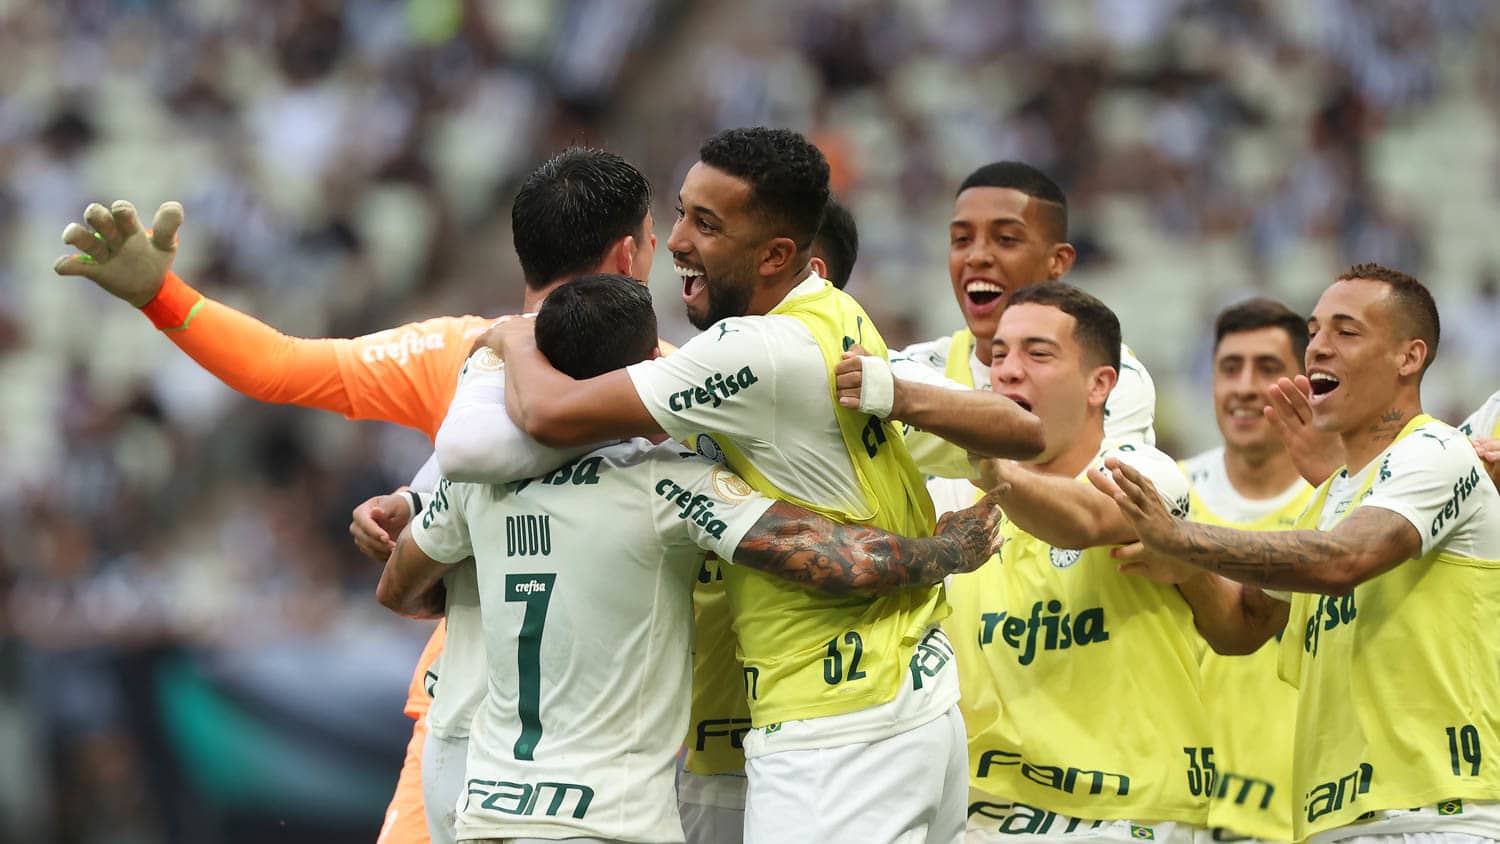 Deu Verdão! Veja as melhores fotos do título paulista do Palmeiras